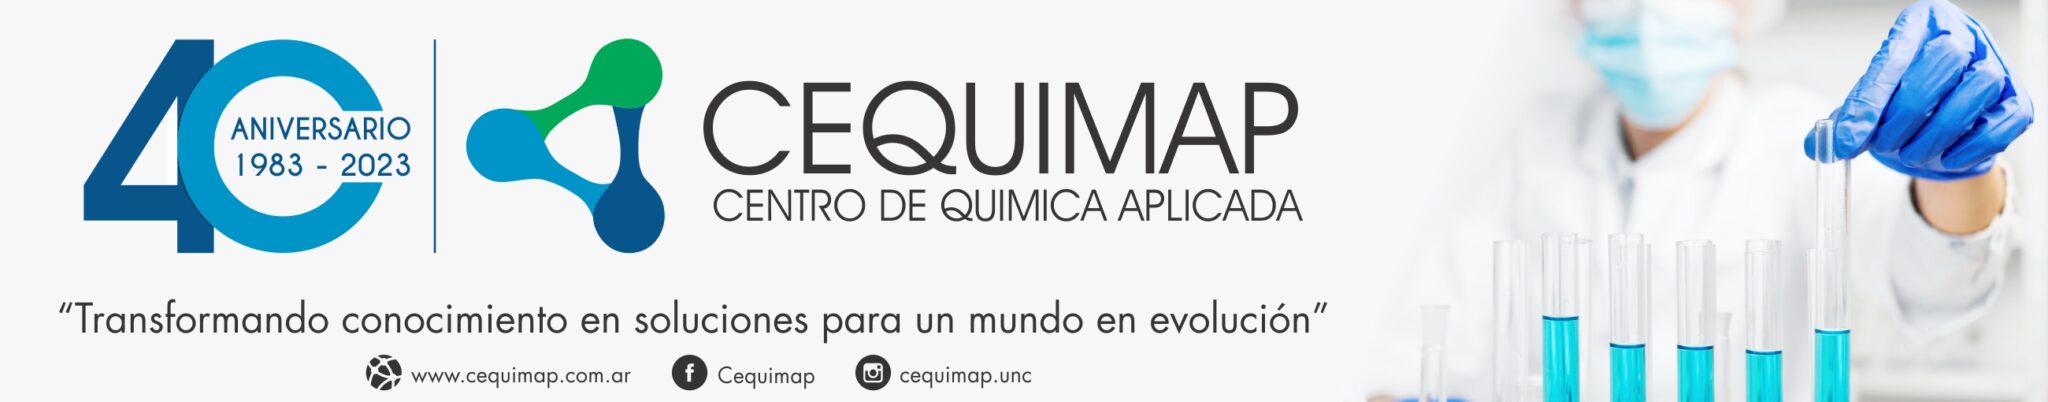 Banner Web cequimap 2